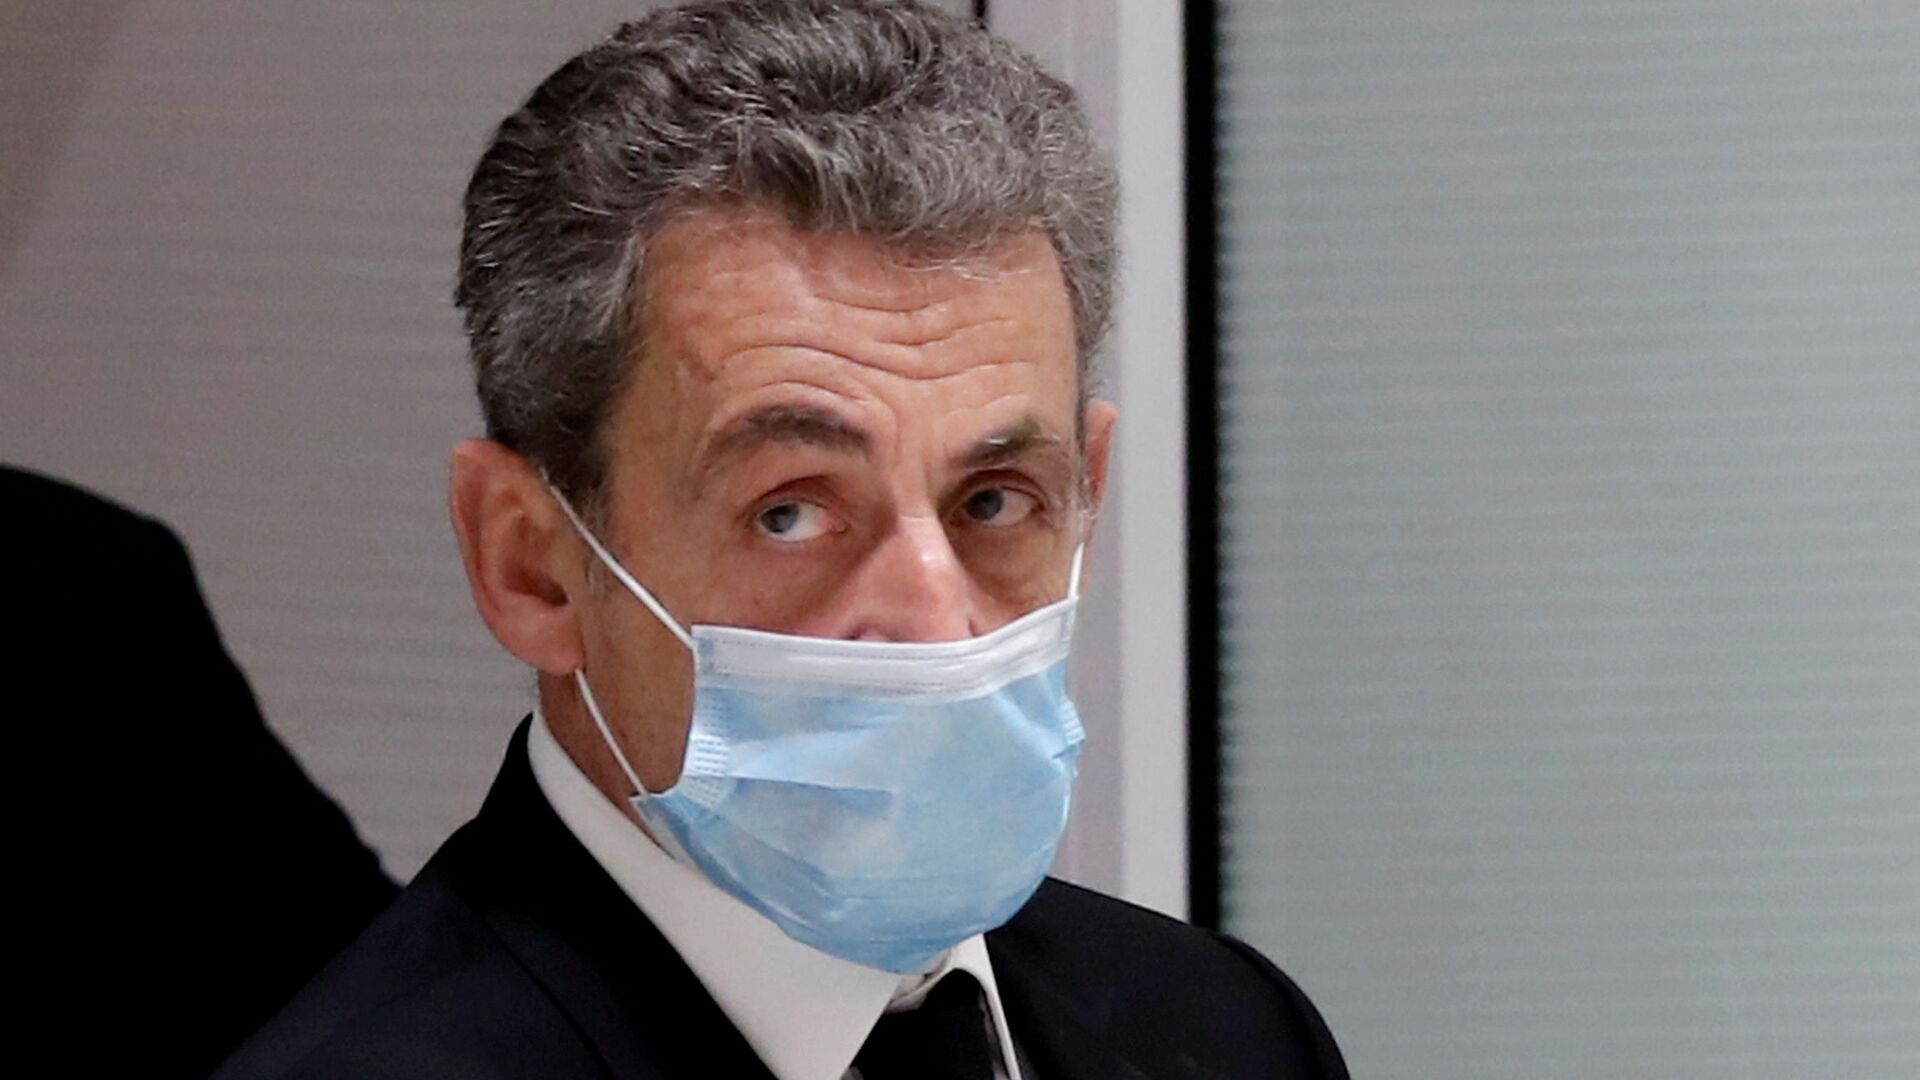 L'ex-Président français Nicolas Sarkozy au tribunal, le 1 mars 2021 - Sputnik Afrique, 1920, 01.03.2021